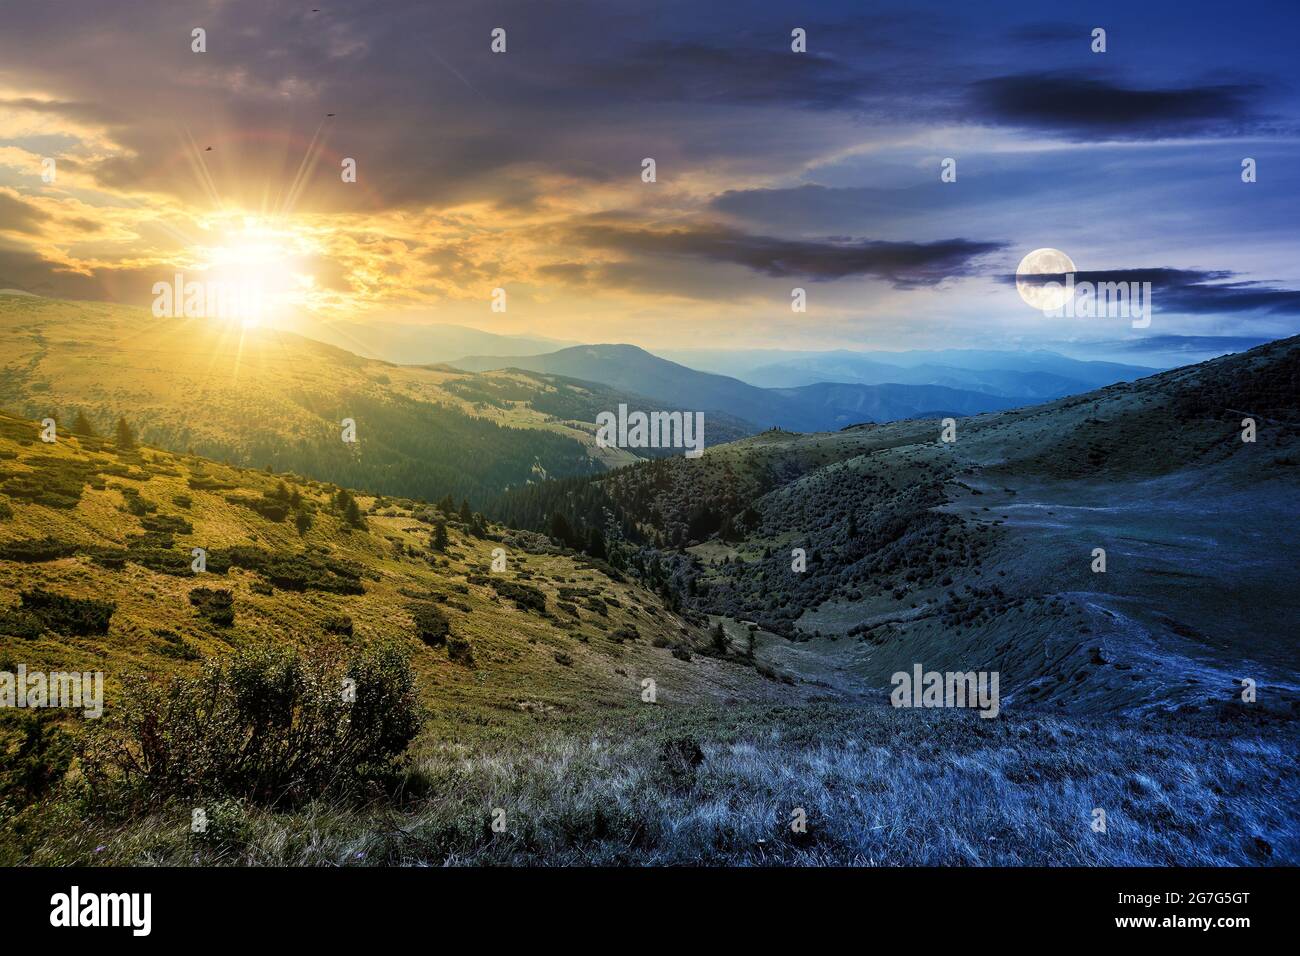 concept de changement d'heure de jour et de nuit au-dessus du paysage de montagne de carpathian. paysage magnifique avec des collines verdoyantes au crépuscule sous un ciel spectaculaire Banque D'Images